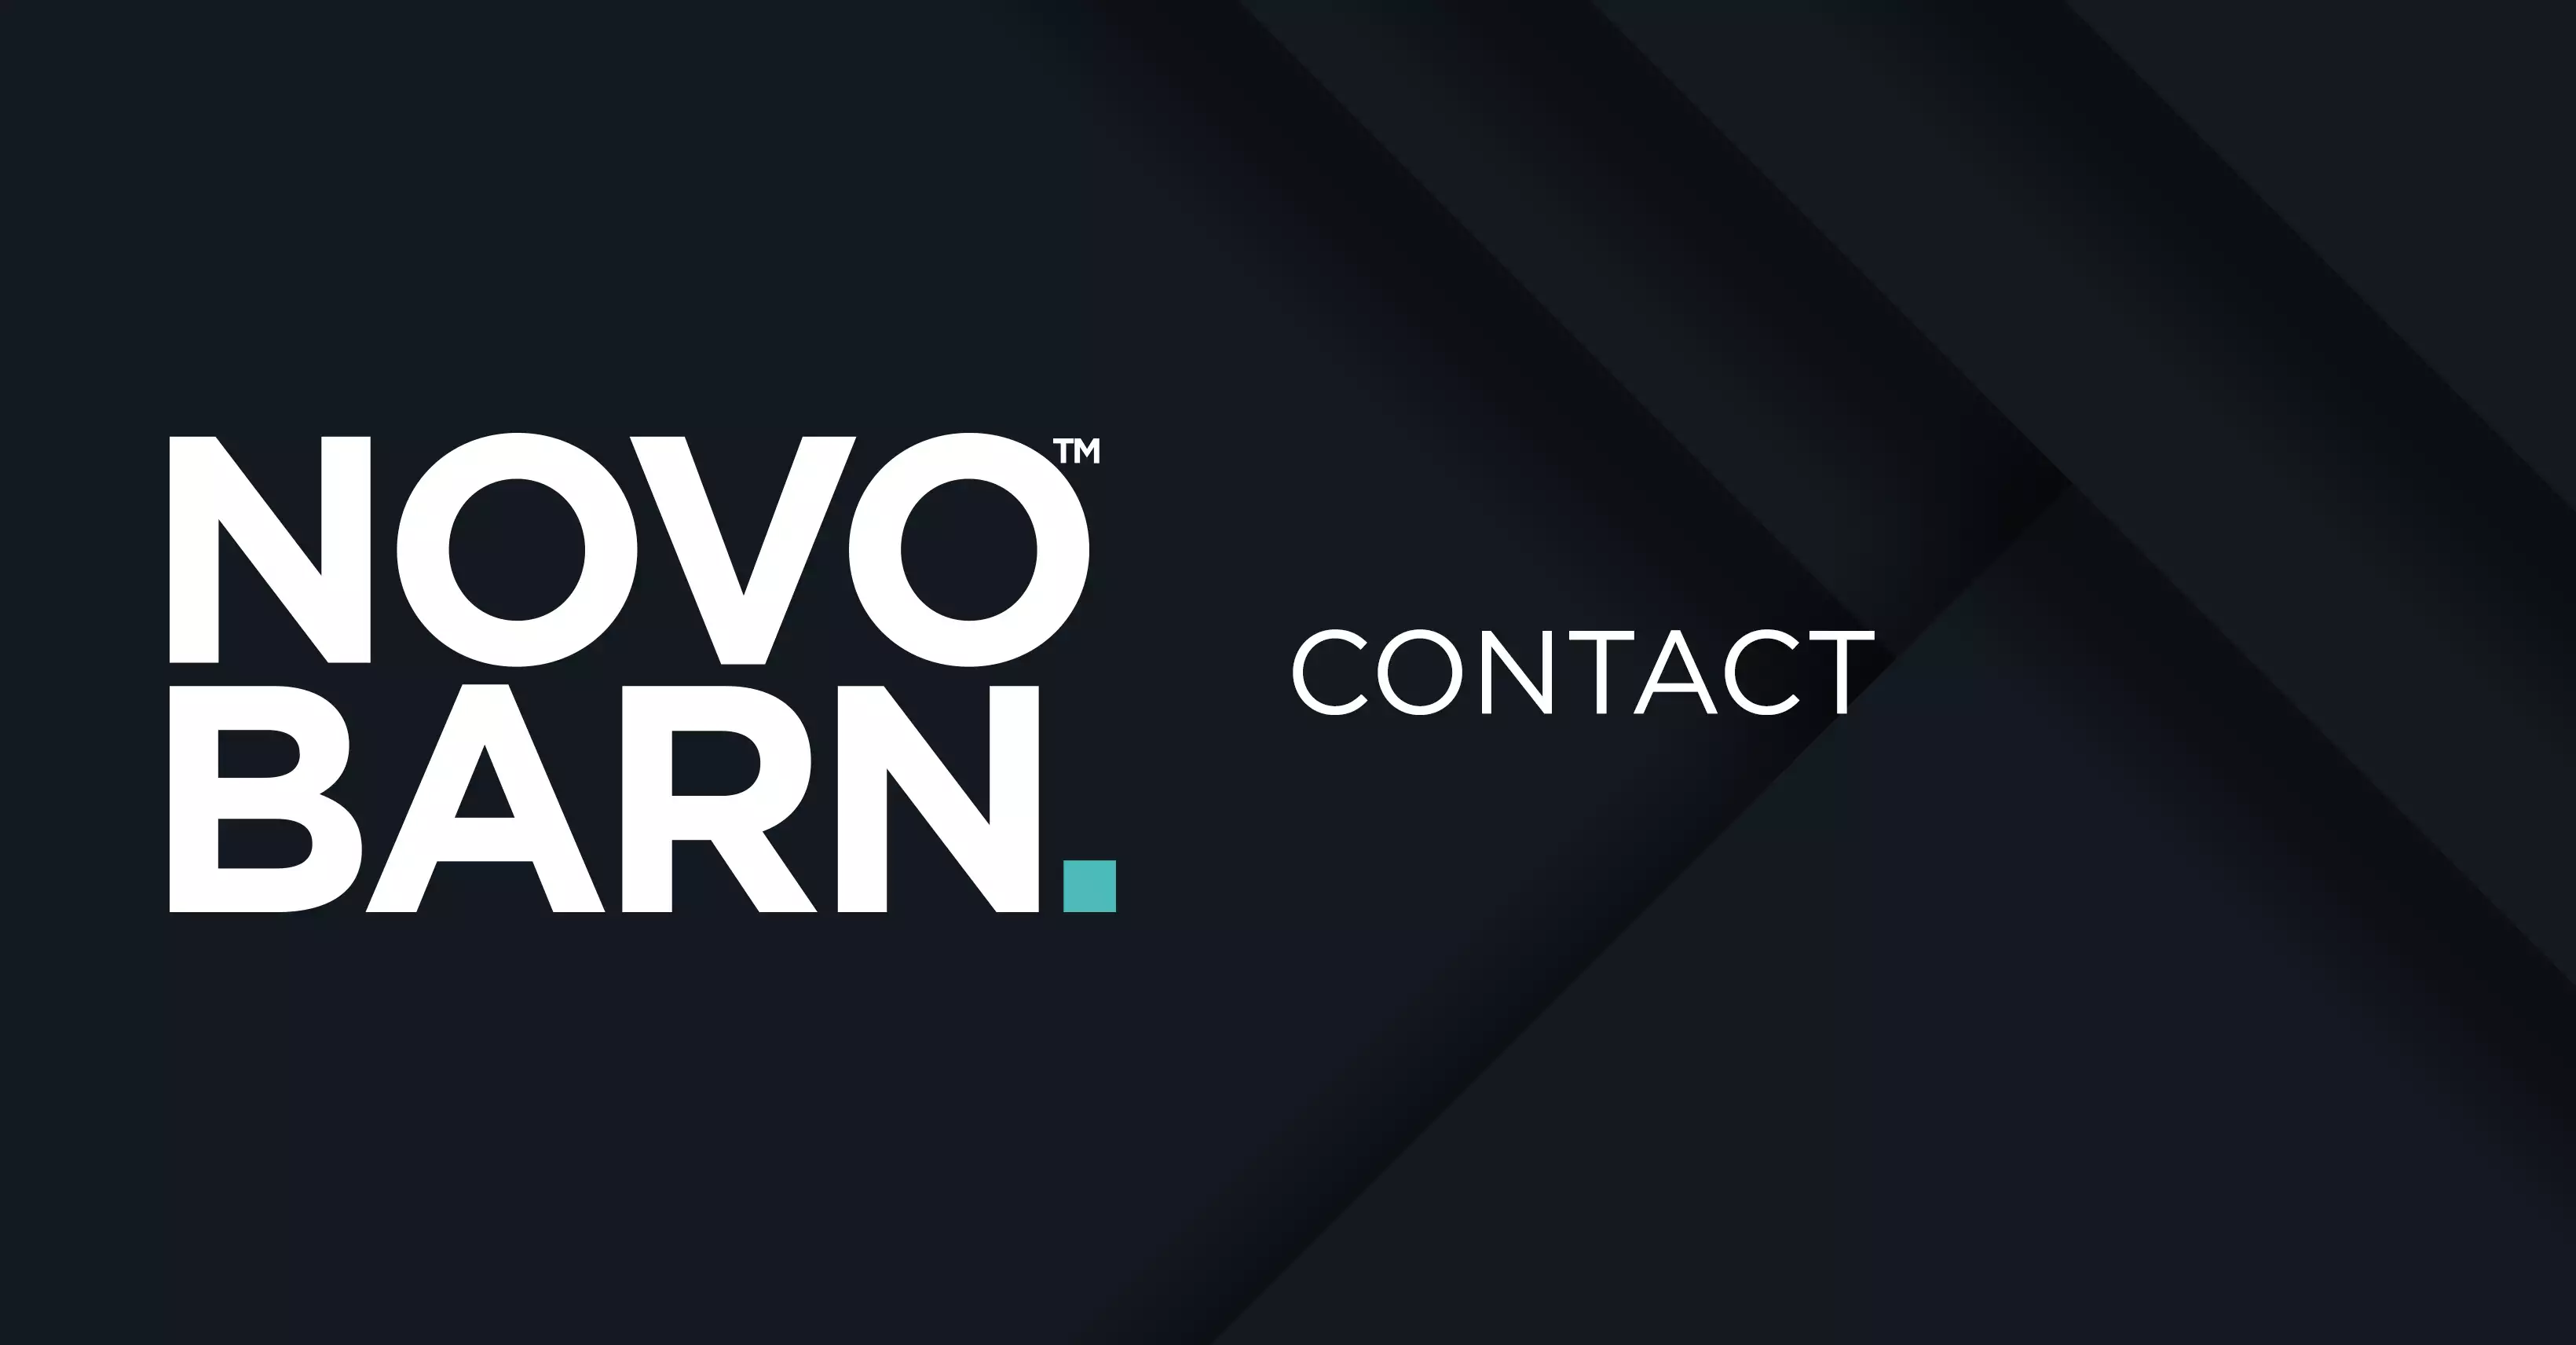 Contact Novobarn